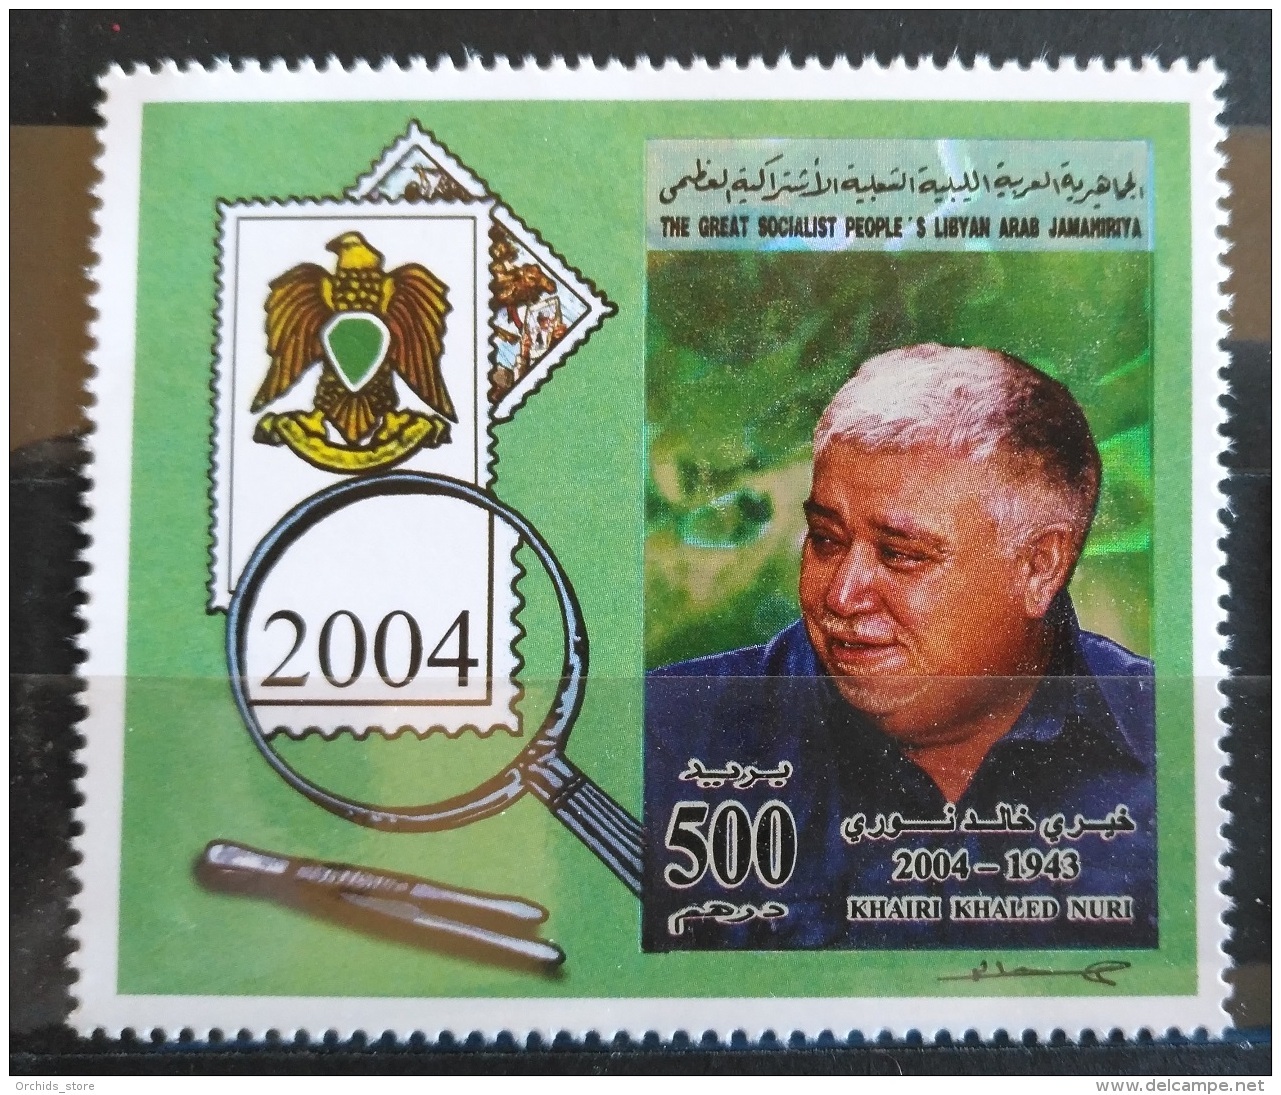 V33 - Libya 2004 MNH Stamp Khairi Khaled Nuri Commemoration, 1953-2004 - Libya